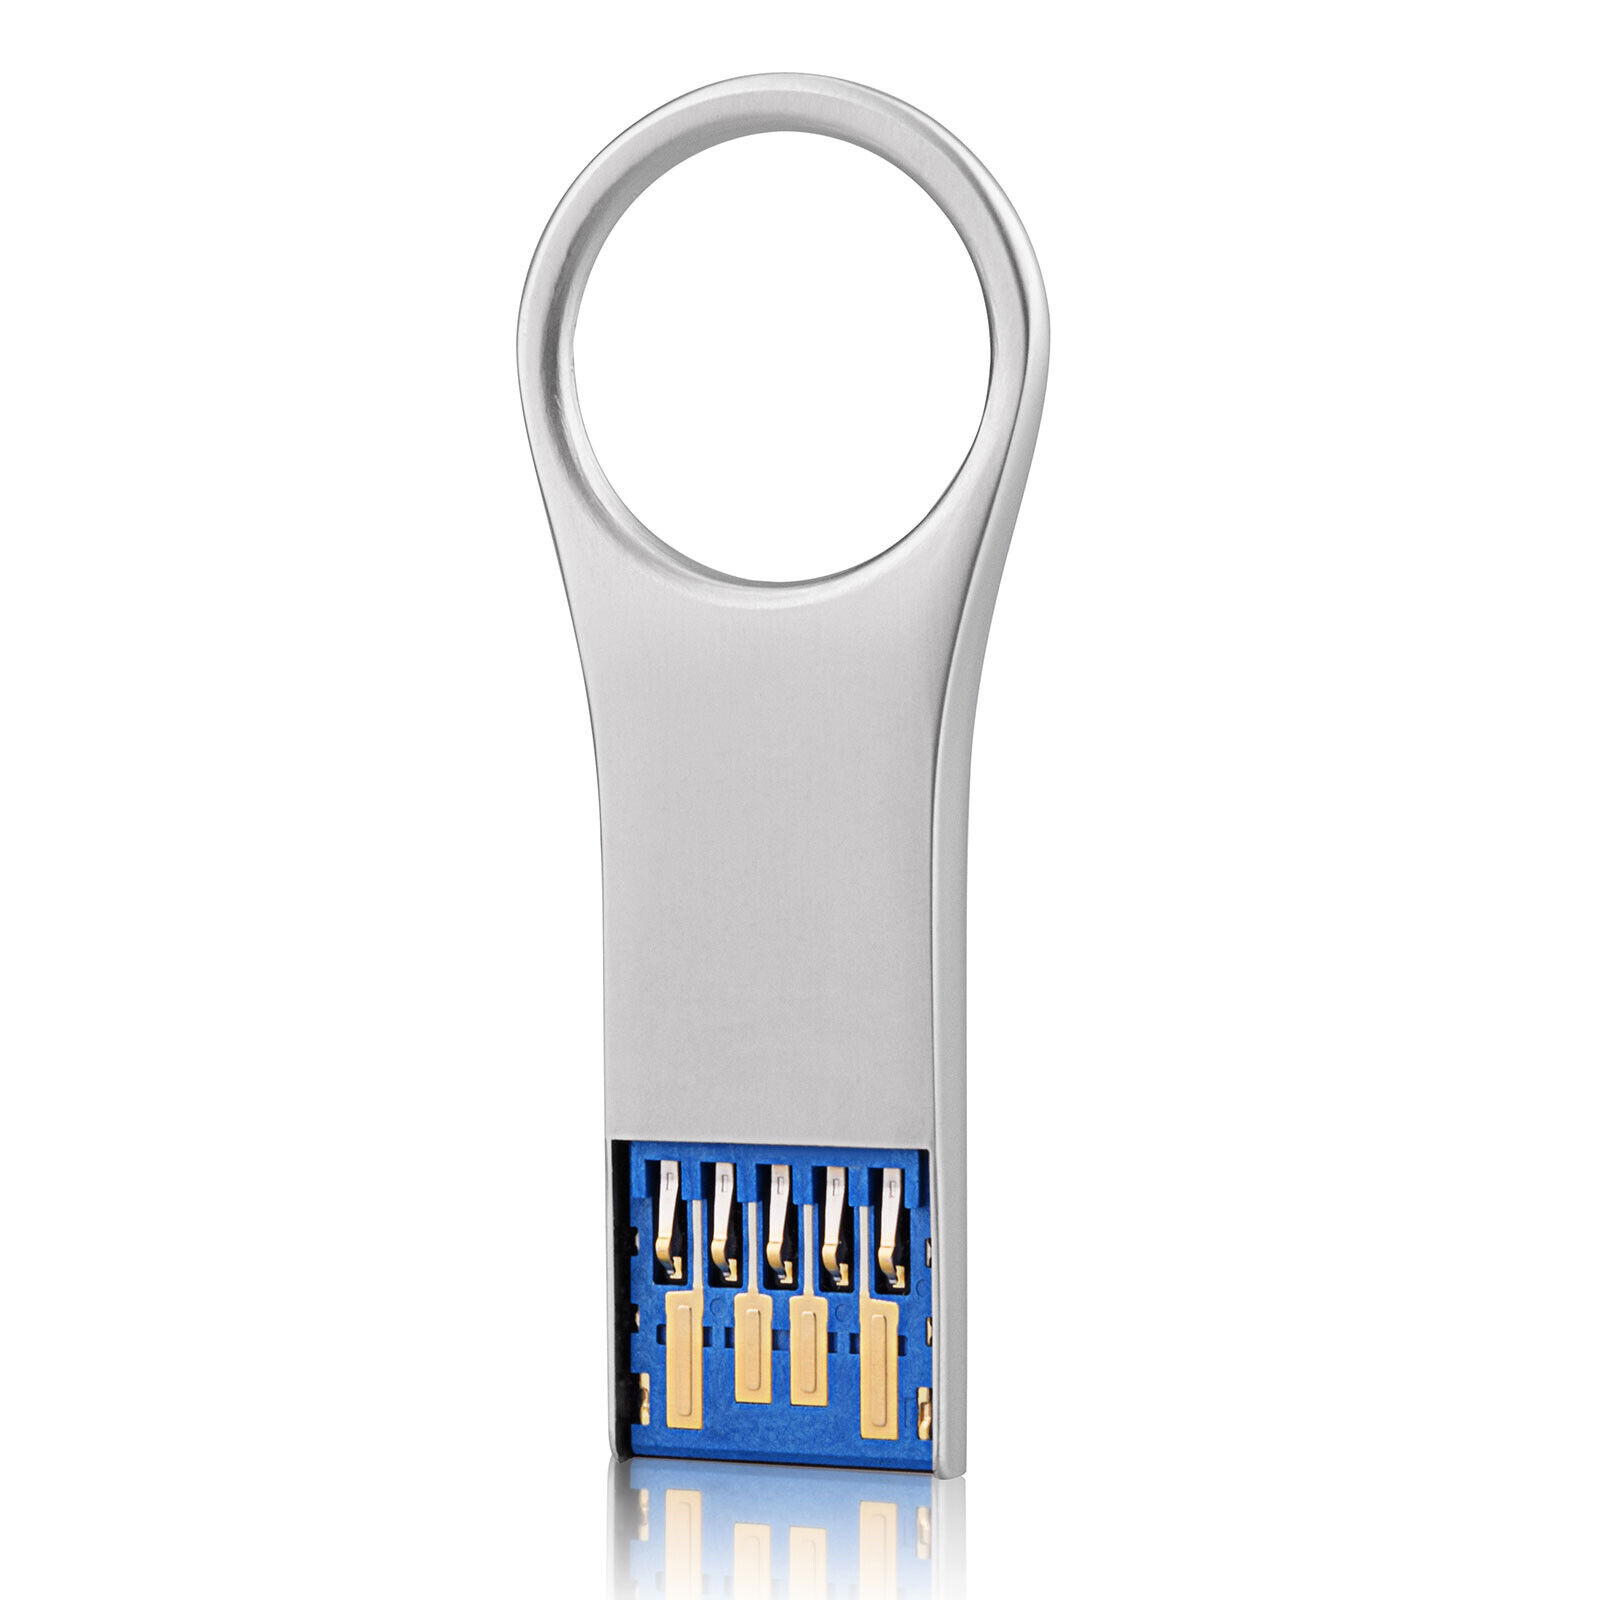 Kootion USB 2.0 32GB Metal Waterproof Flash Drives Memory Sticks Lot 1/5/10pcs 